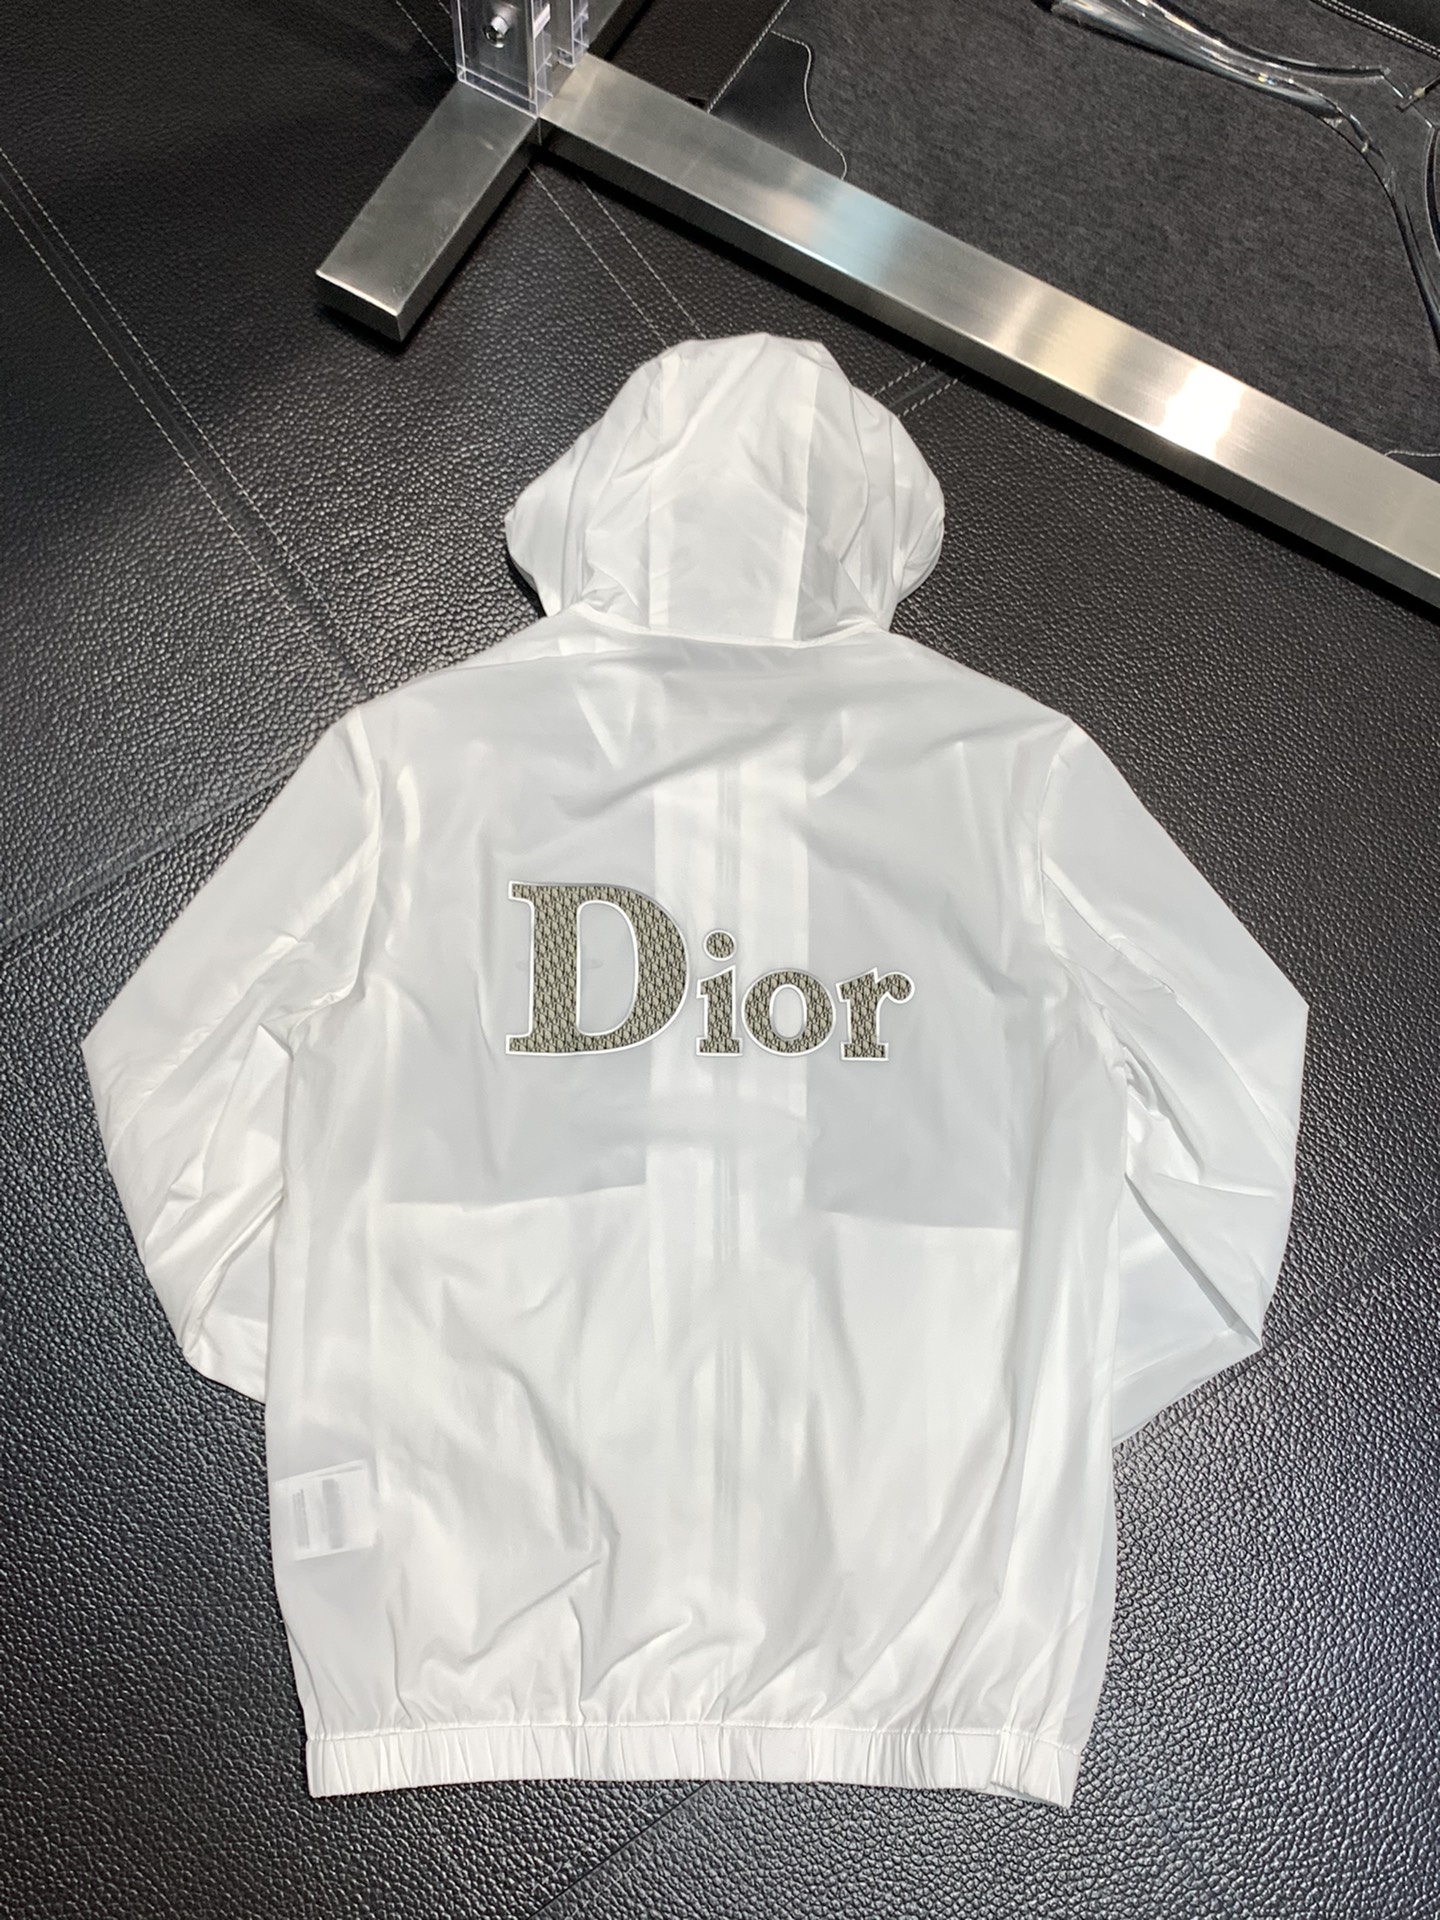 Dior迪奥独家专供最新春秋时尚连帽夹克经典设计感与颜值爆棚的外套品质更是无法挑剔品控可以直接入手不容过